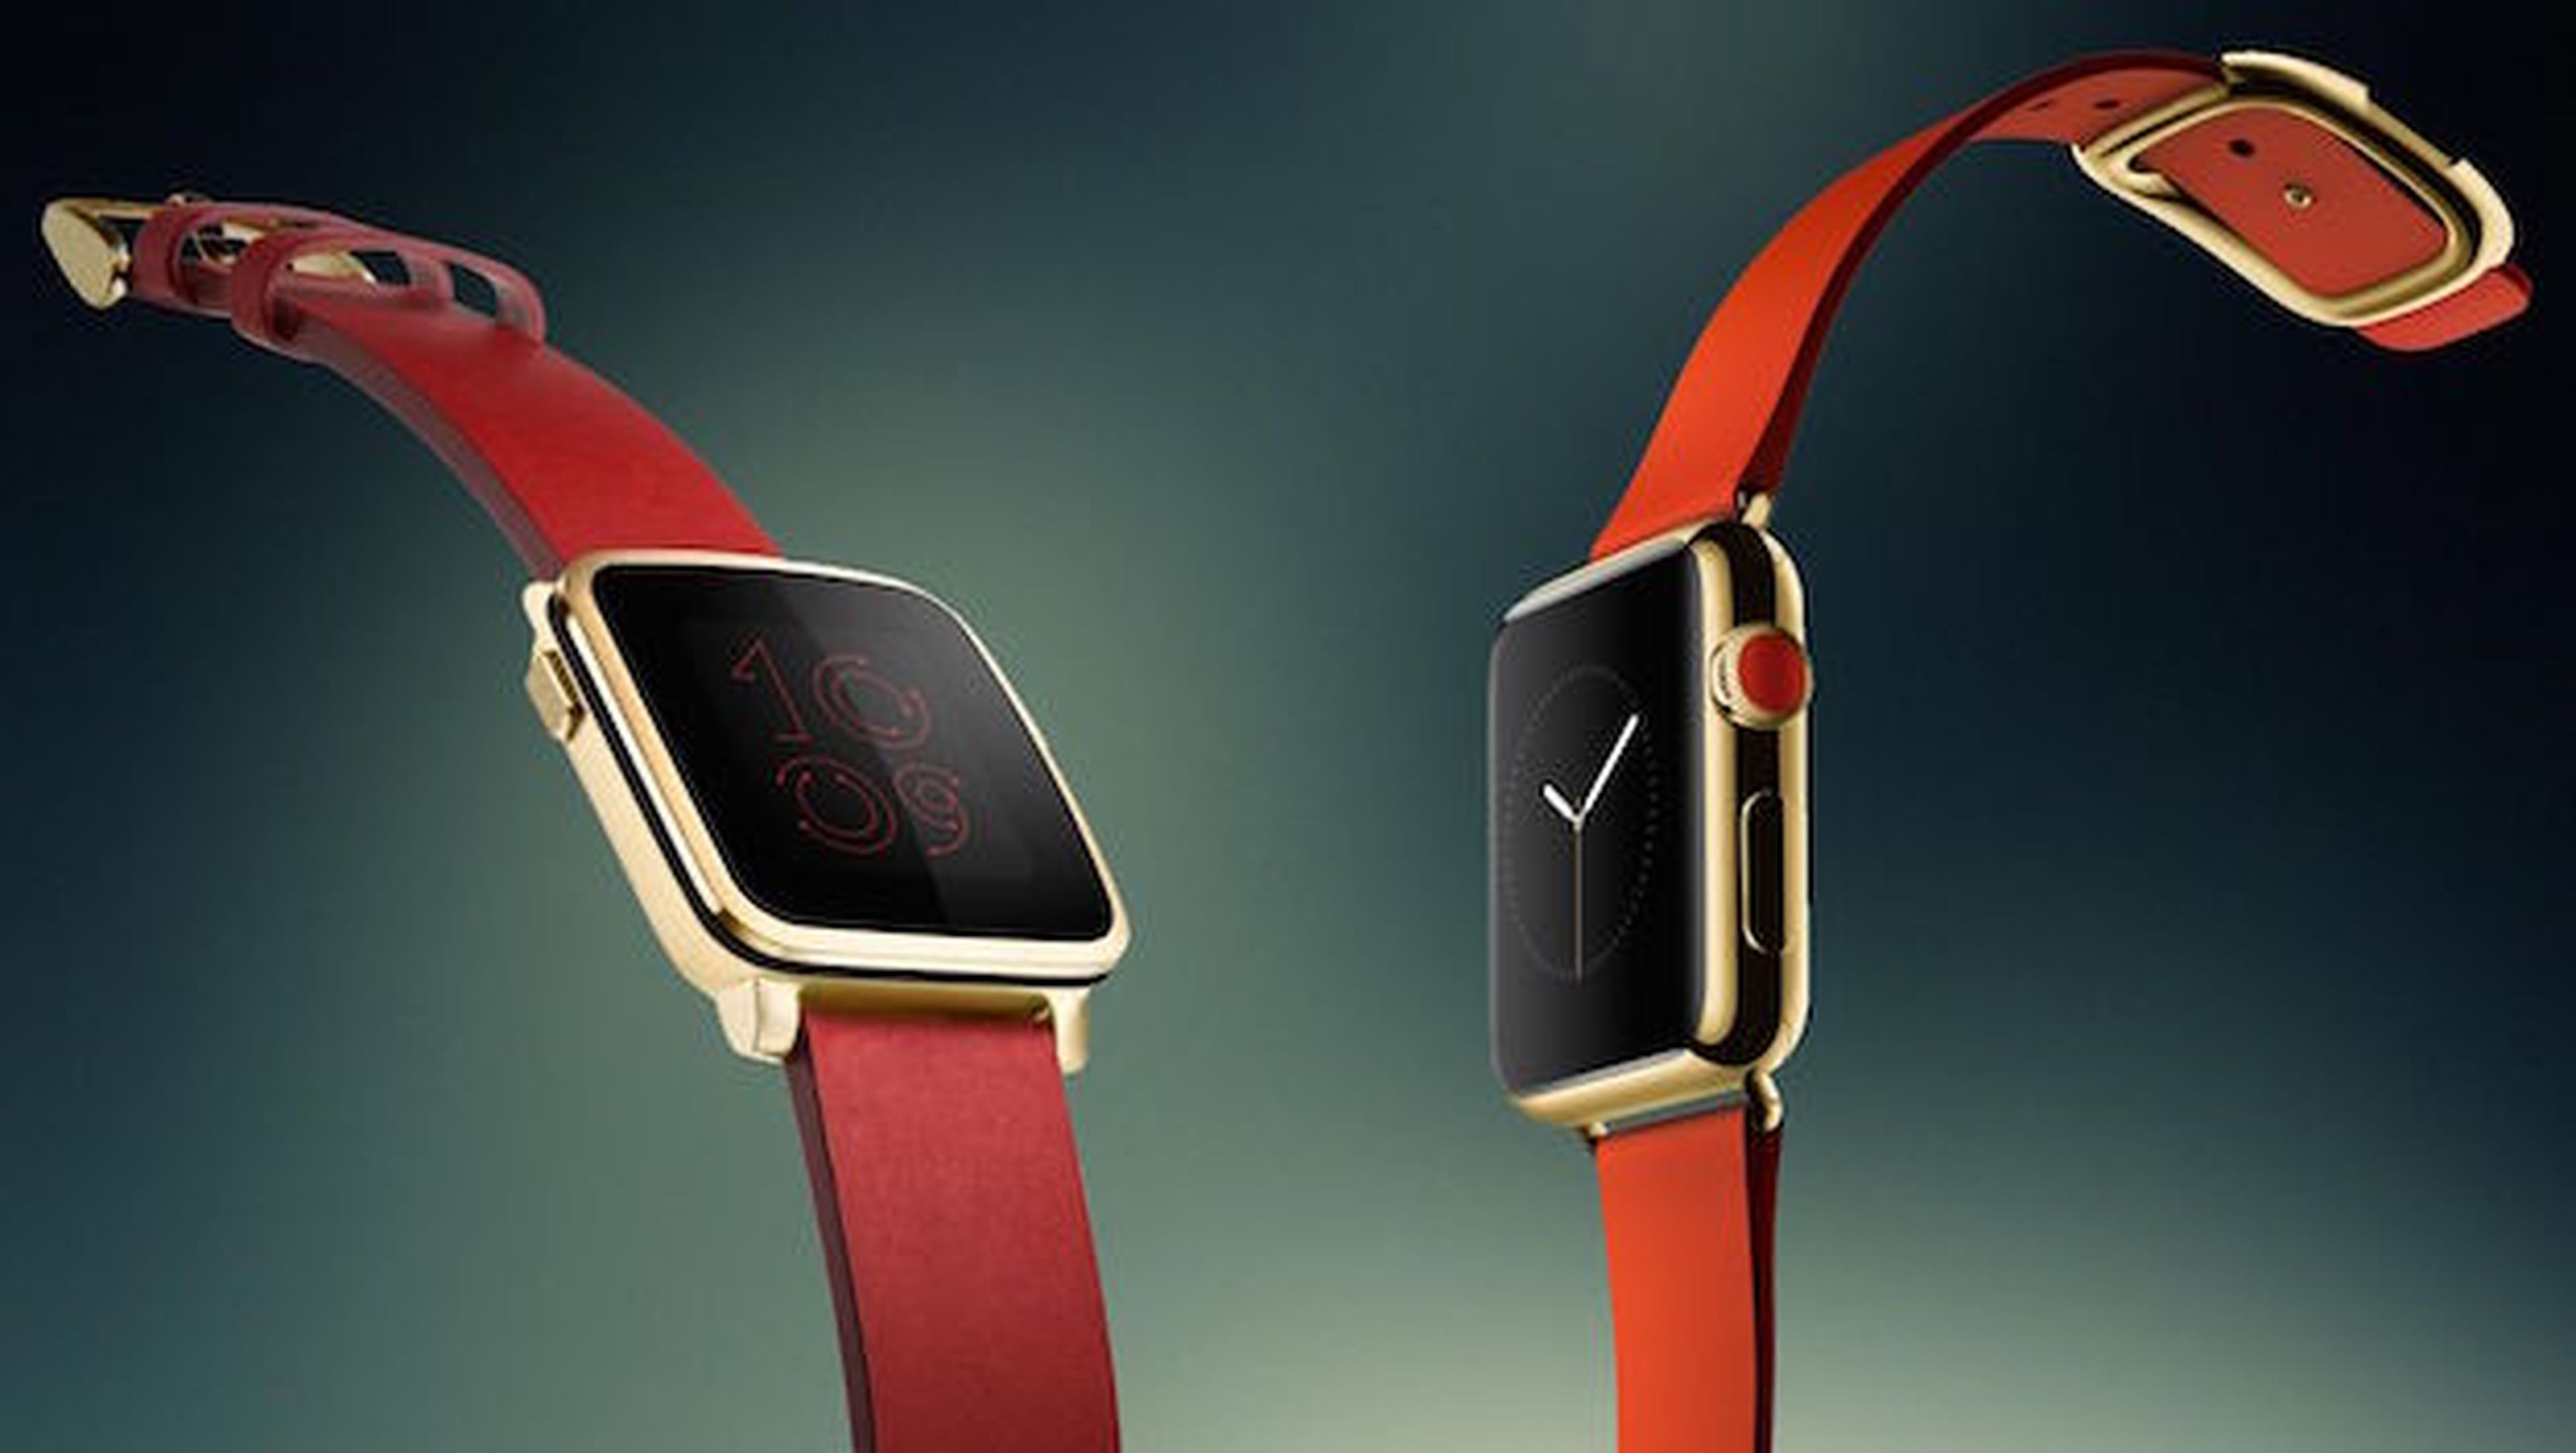 Pebble Time versus Apple Watch